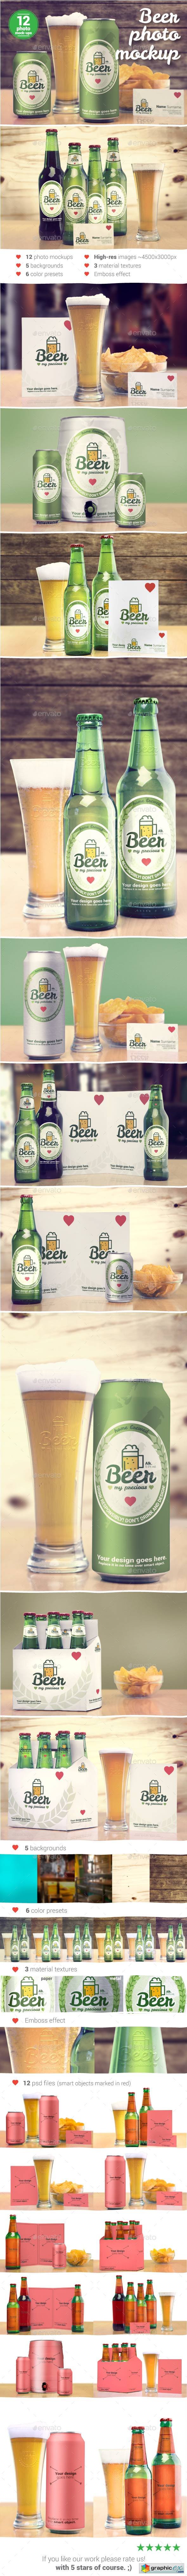 Beer Package & Branding Mock-up